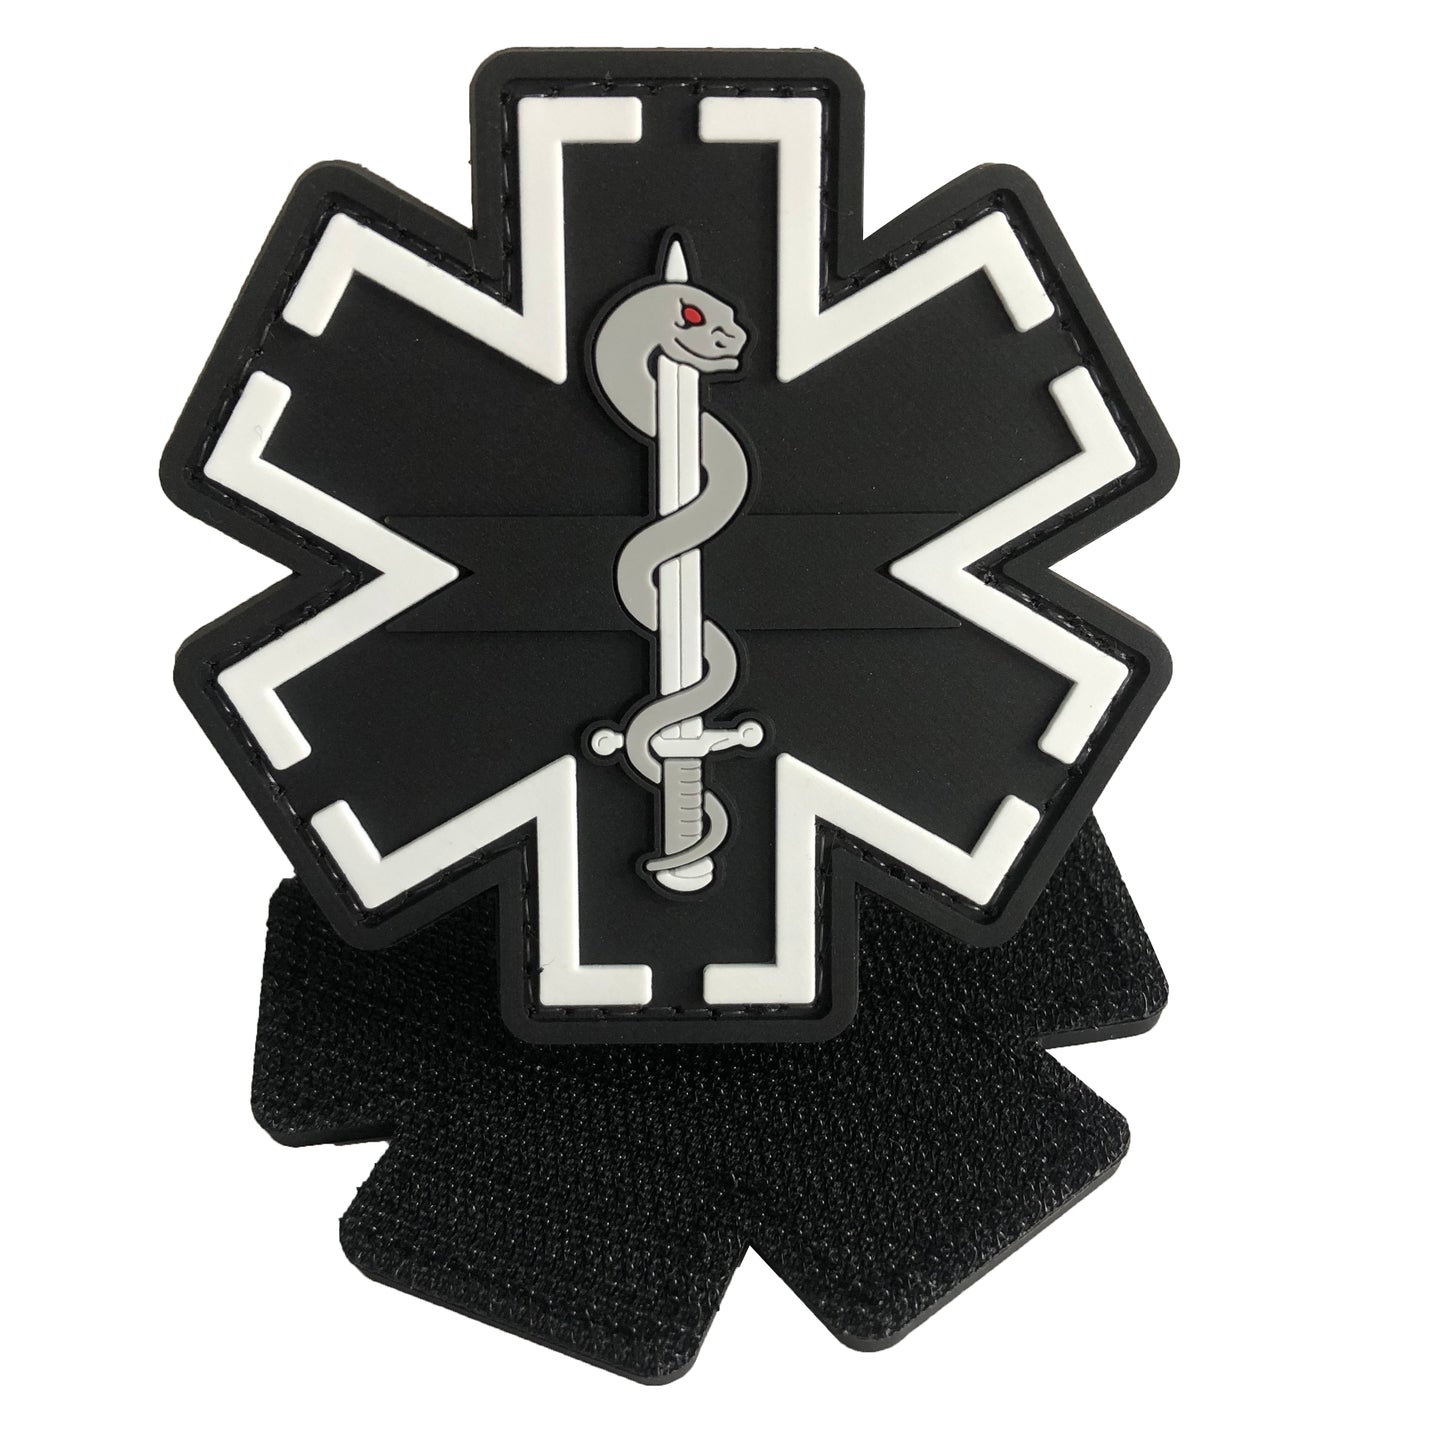 EMT-GR - Medic Paramedic EMS EMT Medical Star of Life PVC Patch Black and Gray